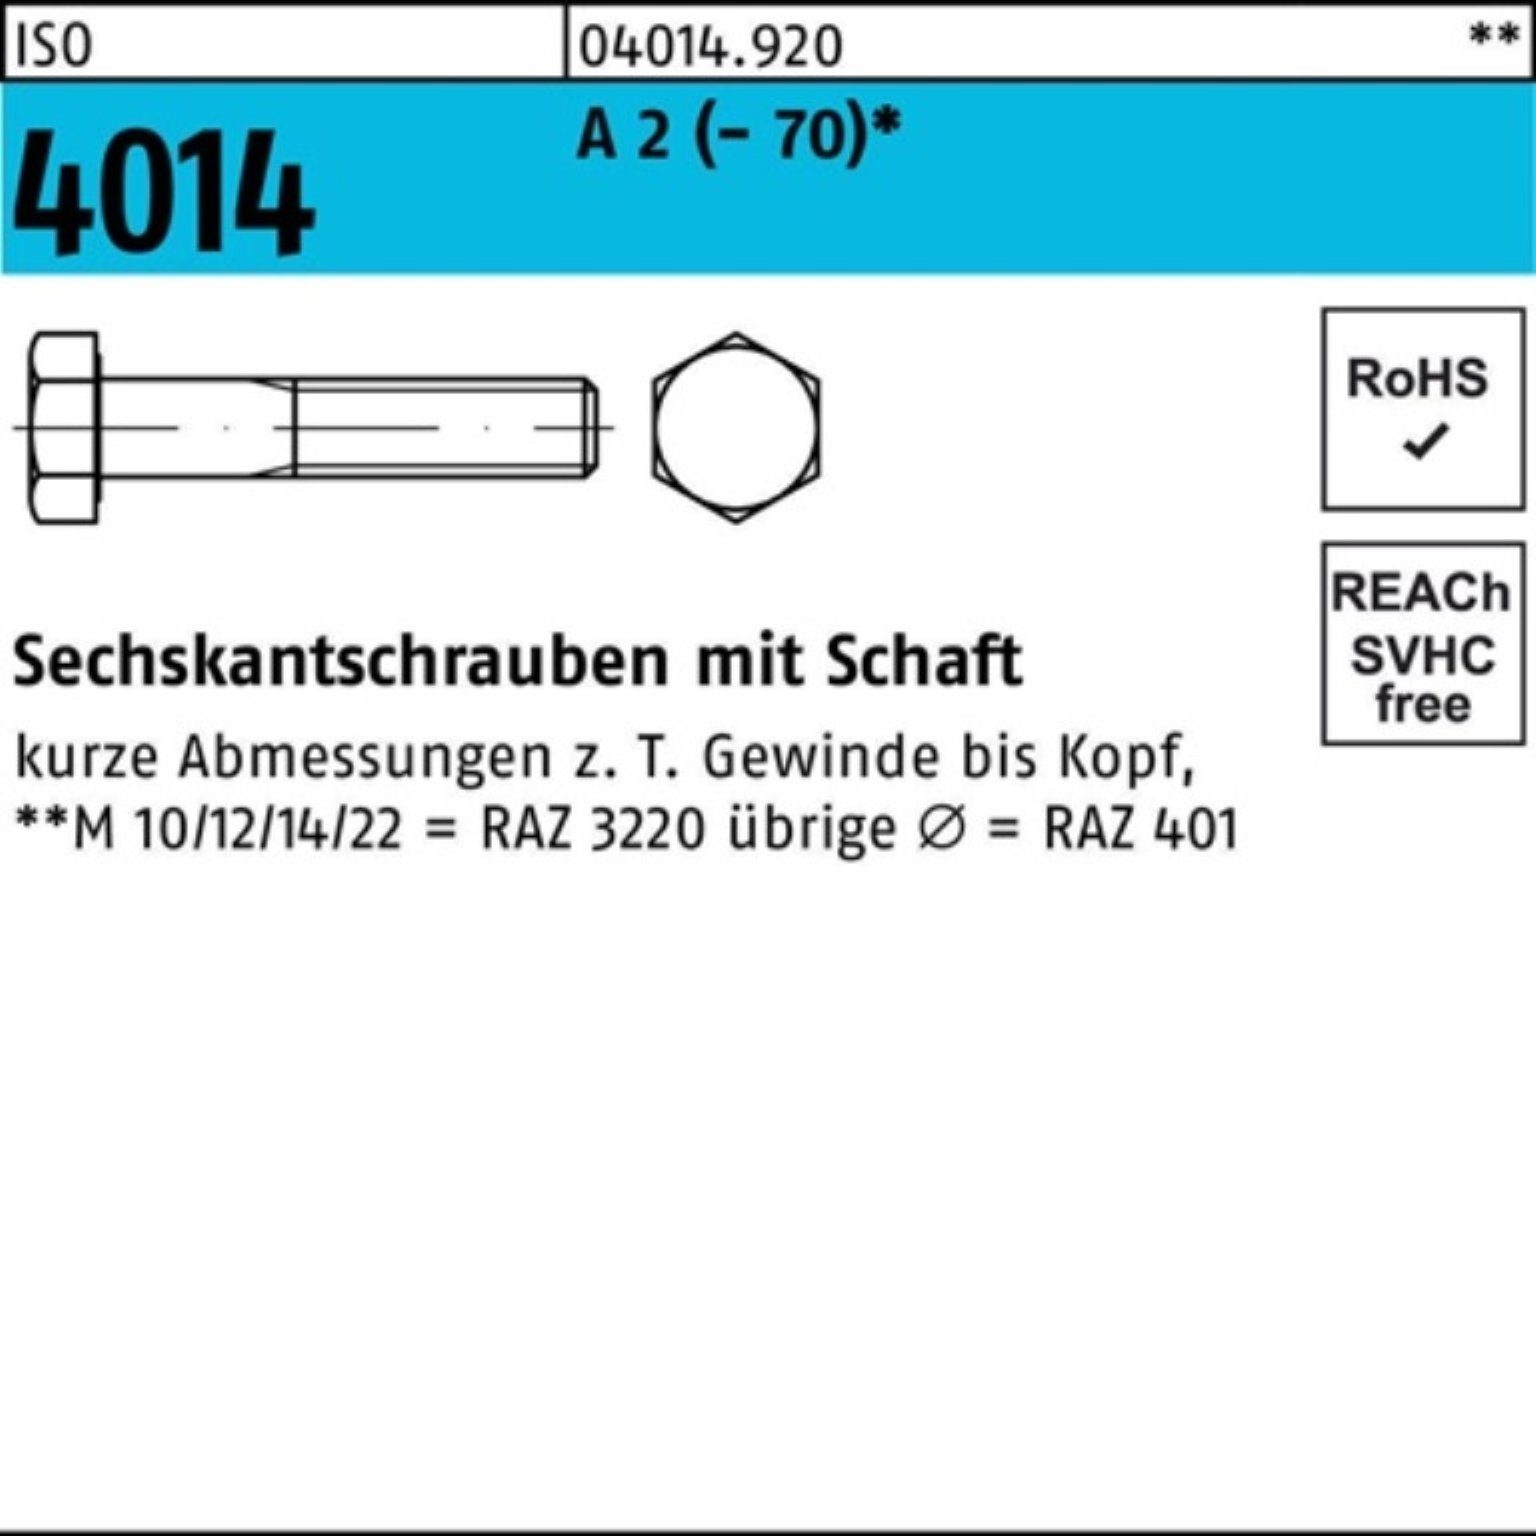 Bufab Sechskantschraube 90 10 100er A M22x ISO 2 (70) St Pack 4014 Schaft Sechskantschraube